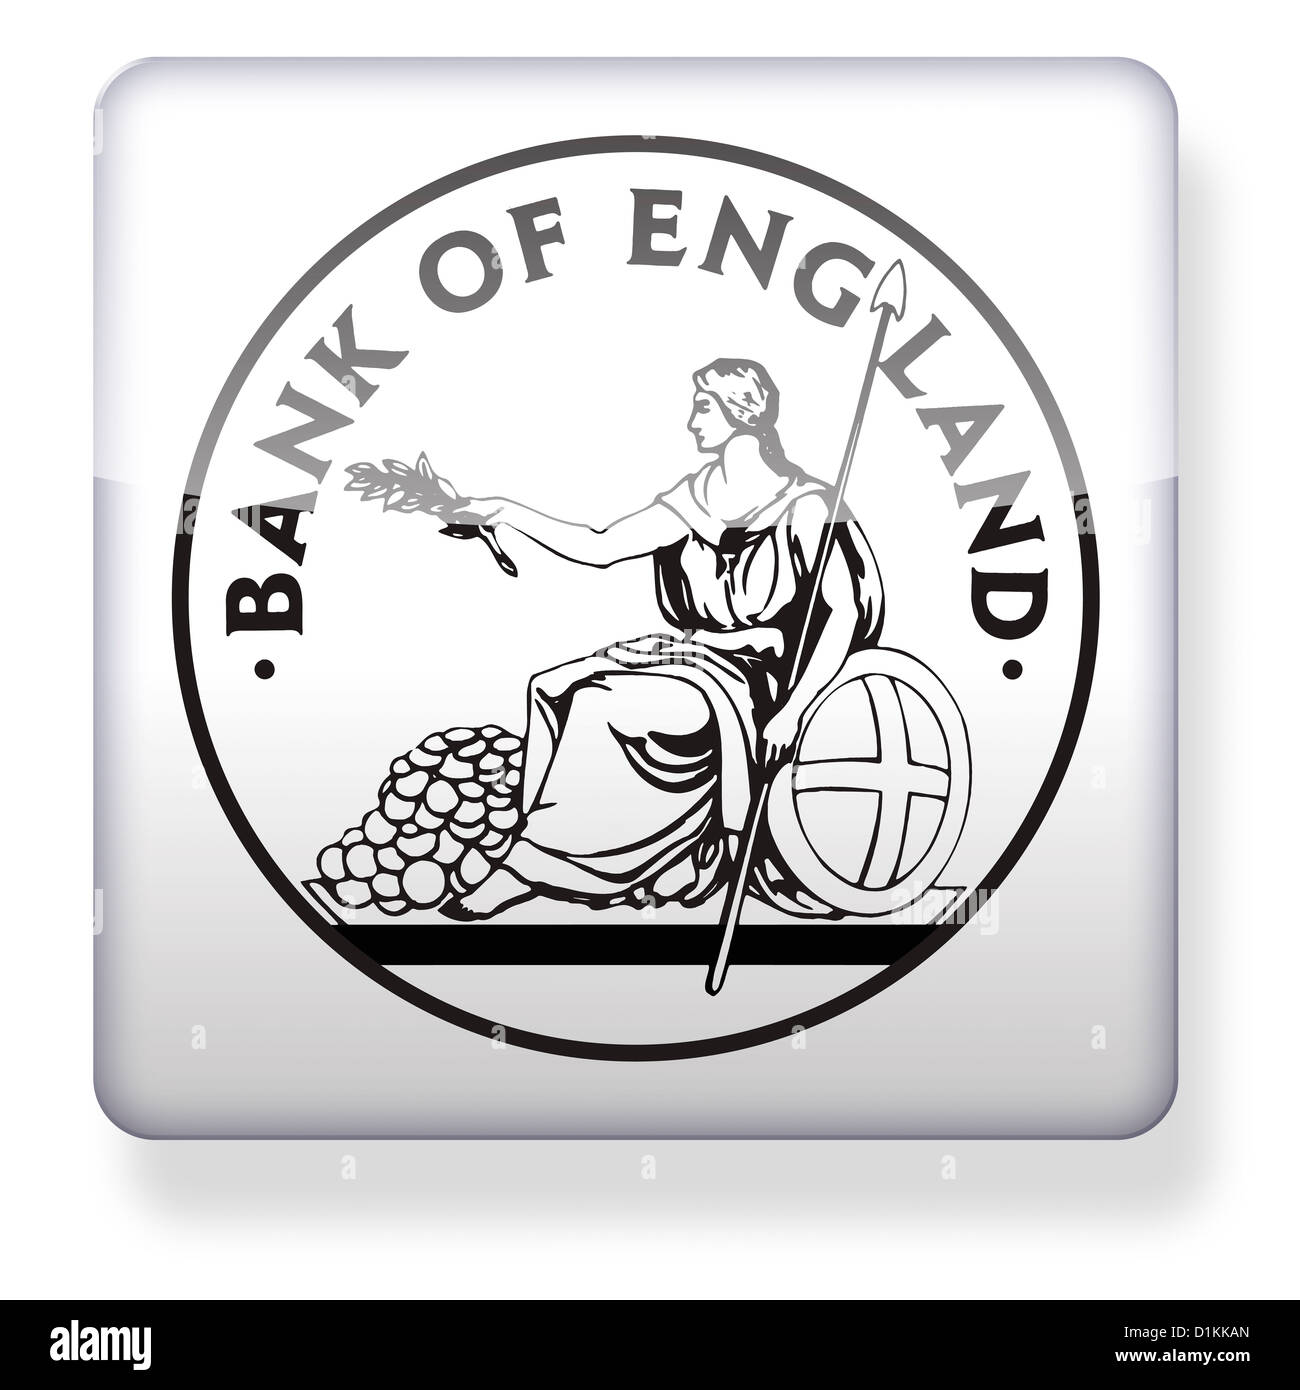 Banca d'Inghilterra logo come l'icona di un'app Foto Stock